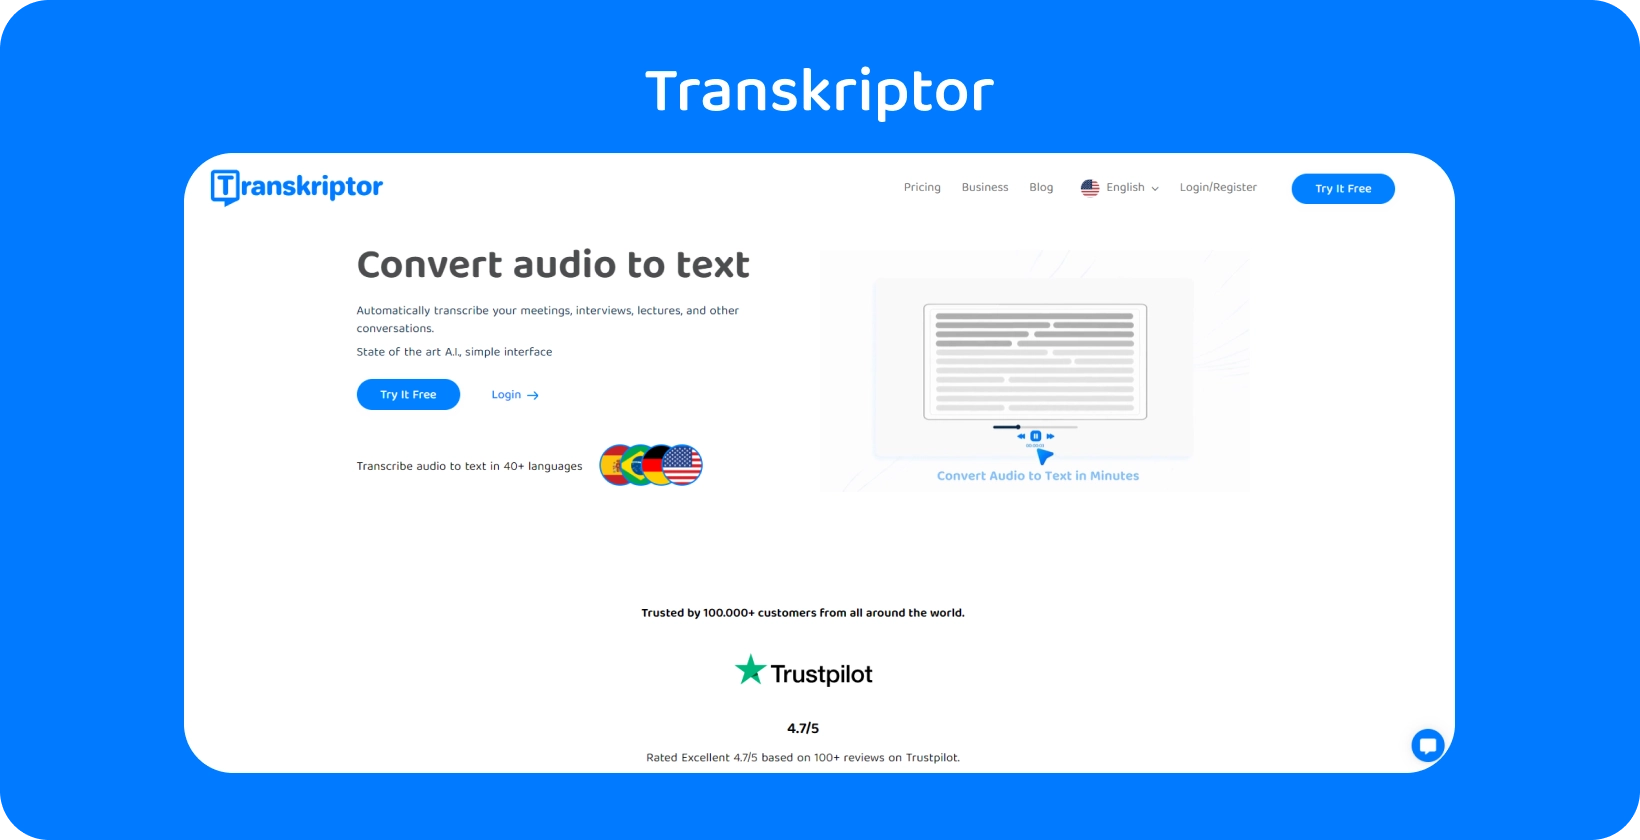 Transkriptorのインターフェースは、会議アシスタント機能を紹介し、定性調査の文字起こしを合理化します。